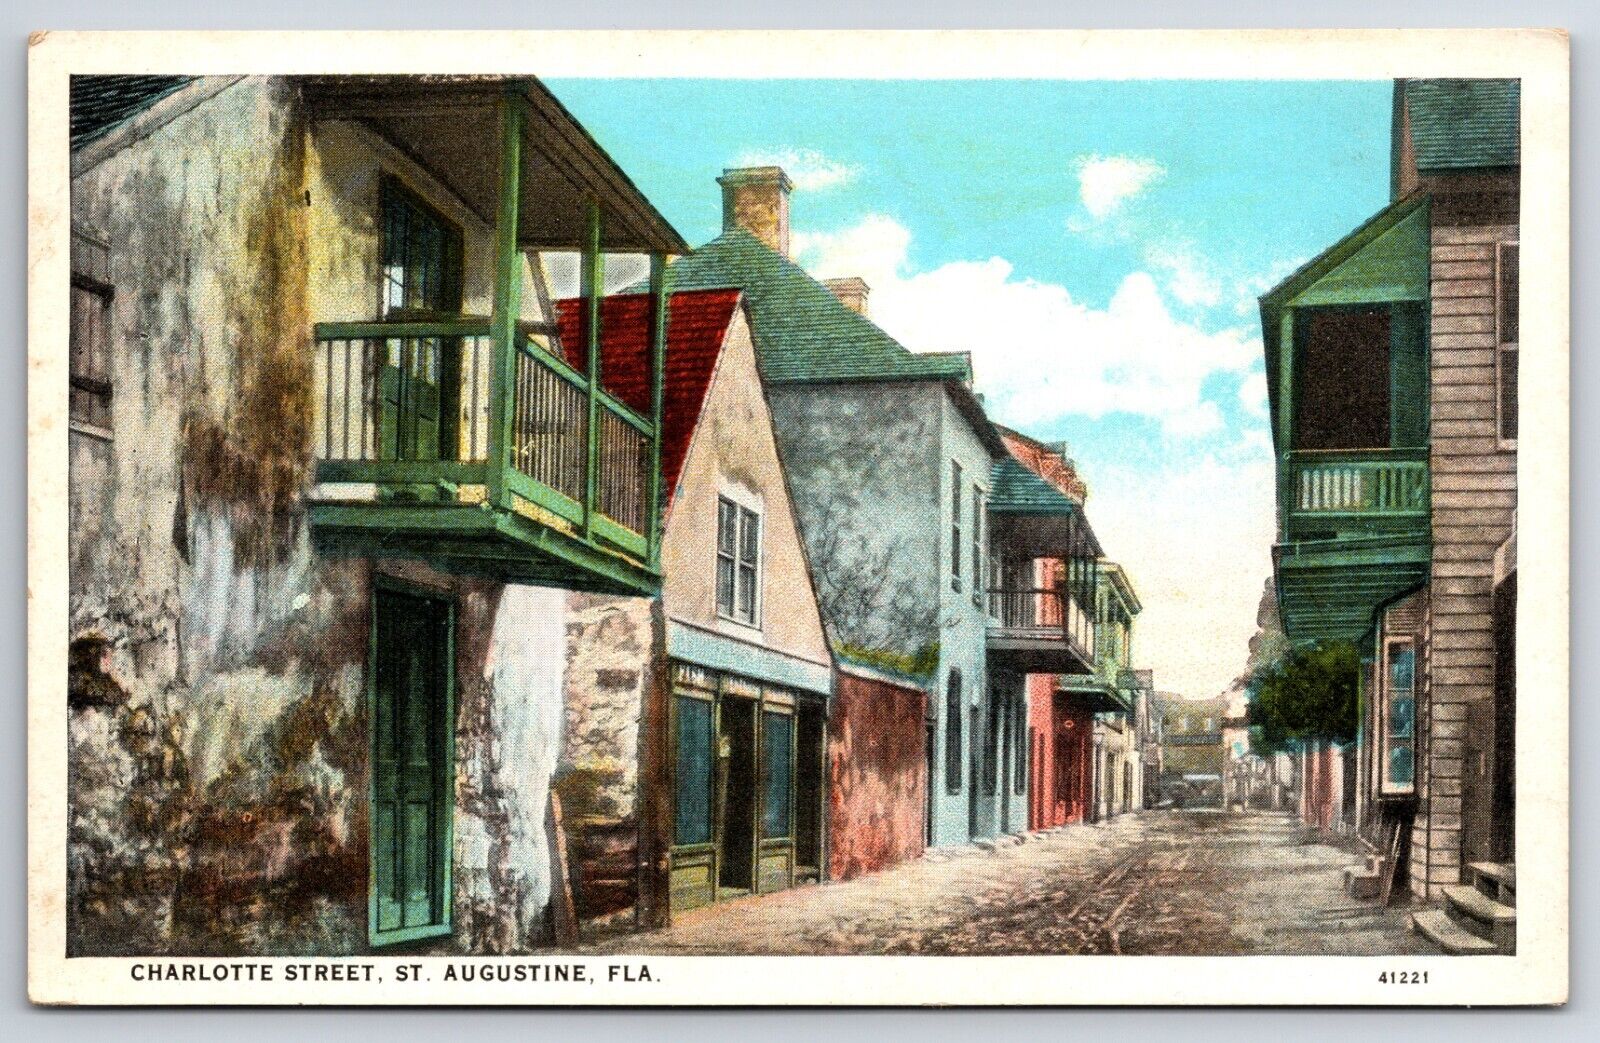 Charlotte Street View St Augustine Florida FL Vintage CURT TEICH Postcard